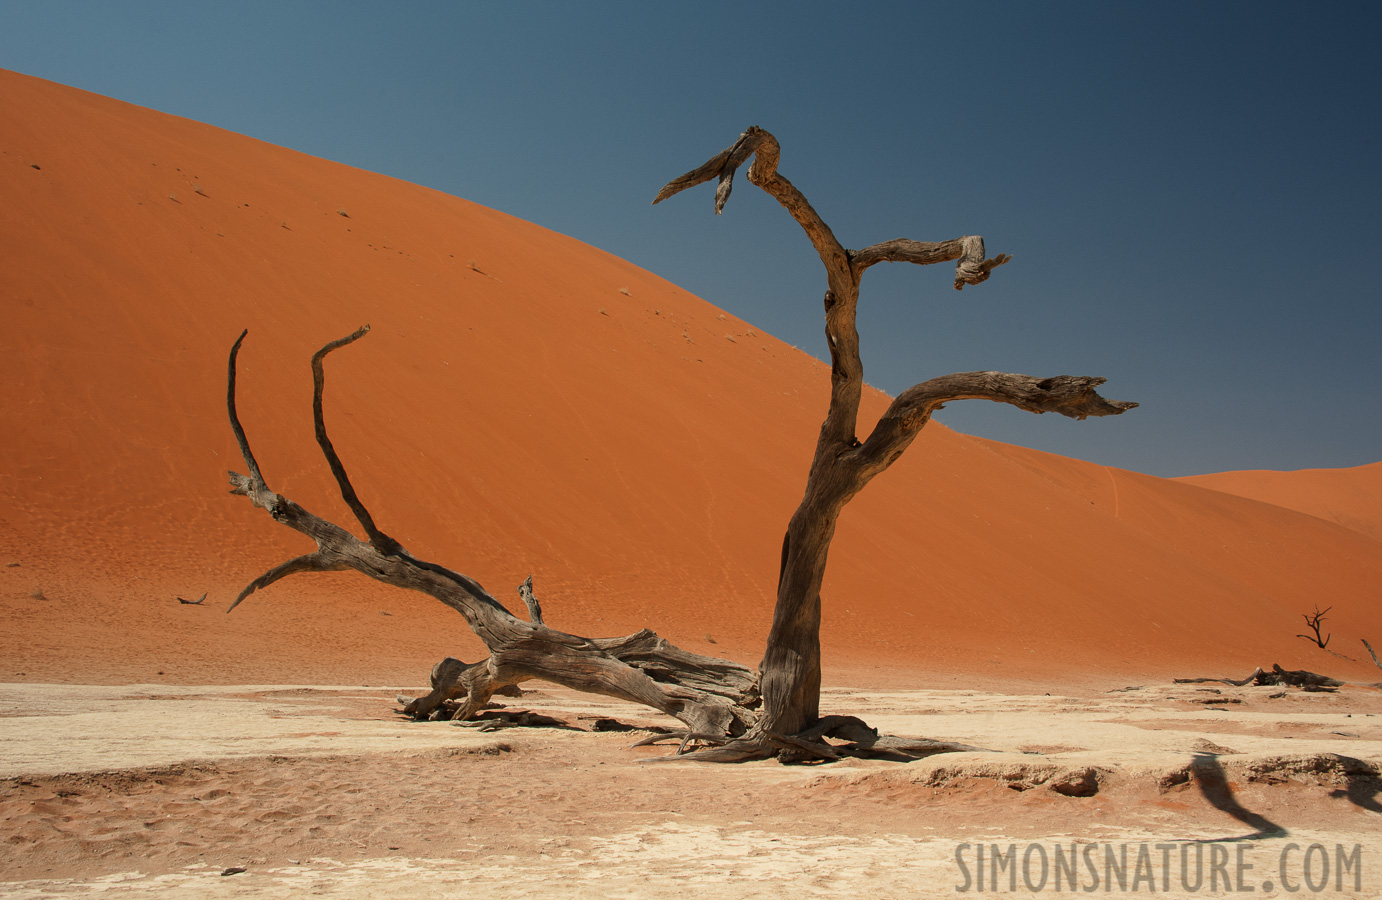 Namib-Naukluft National Park [32 mm, 1/200 sec at f / 13, ISO 400]